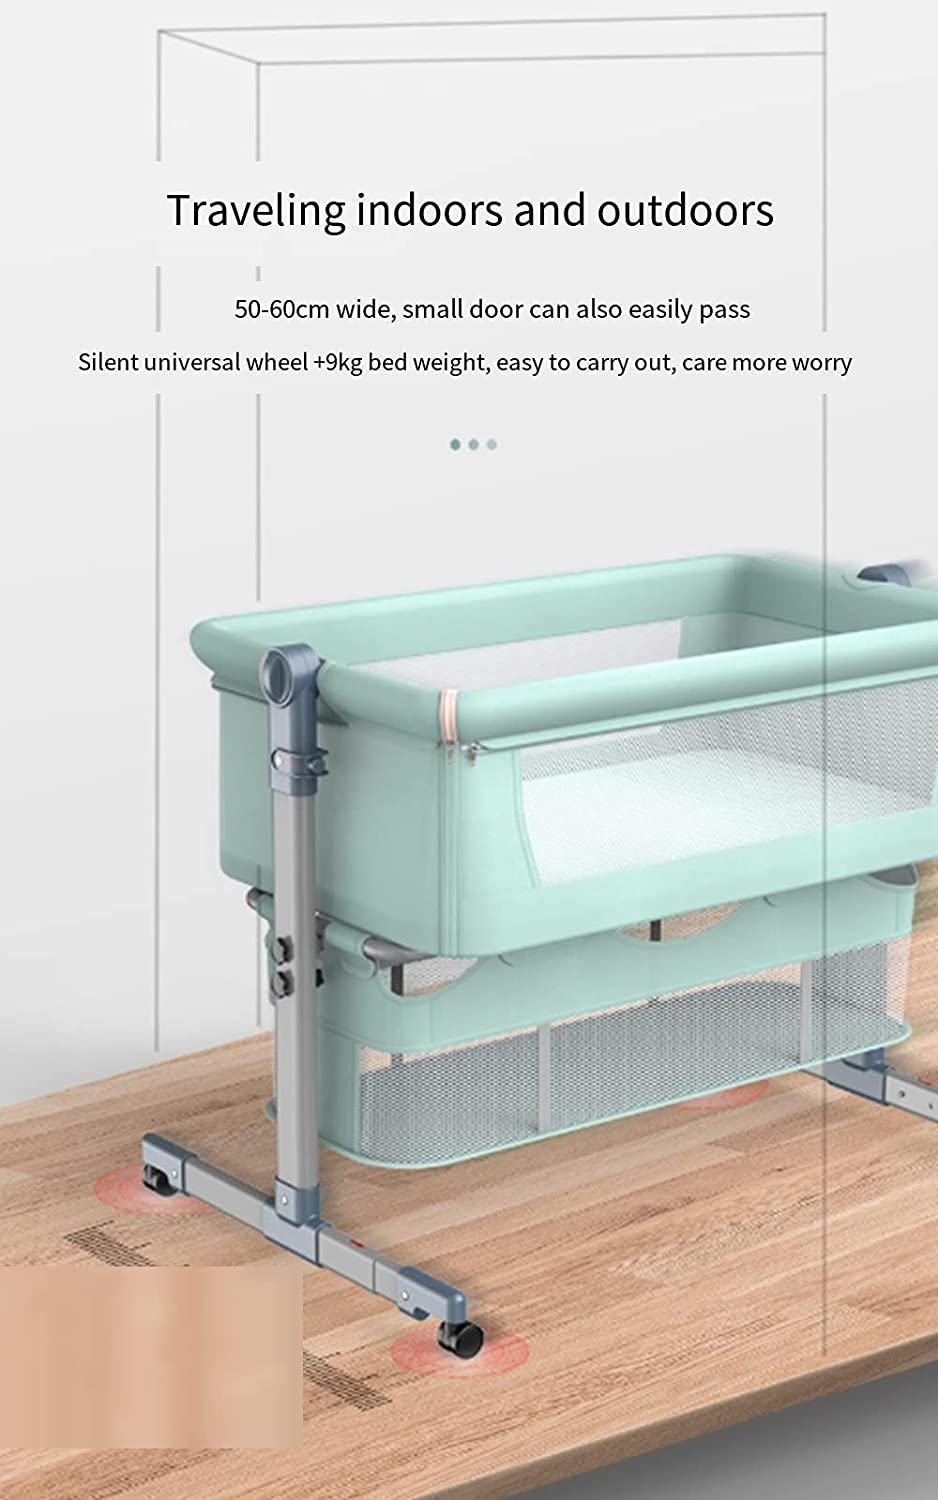 سرير اطفال متنقل قابل للطي والتفكيك مع مفصلات تعديل الارتفاع عادي وهزاز كول بيبي Coolbaby Portable Removable Crib Folding Adjustable Height Spliced-Size Crib Baby Crib - cG9zdDo1OTIxNzY=